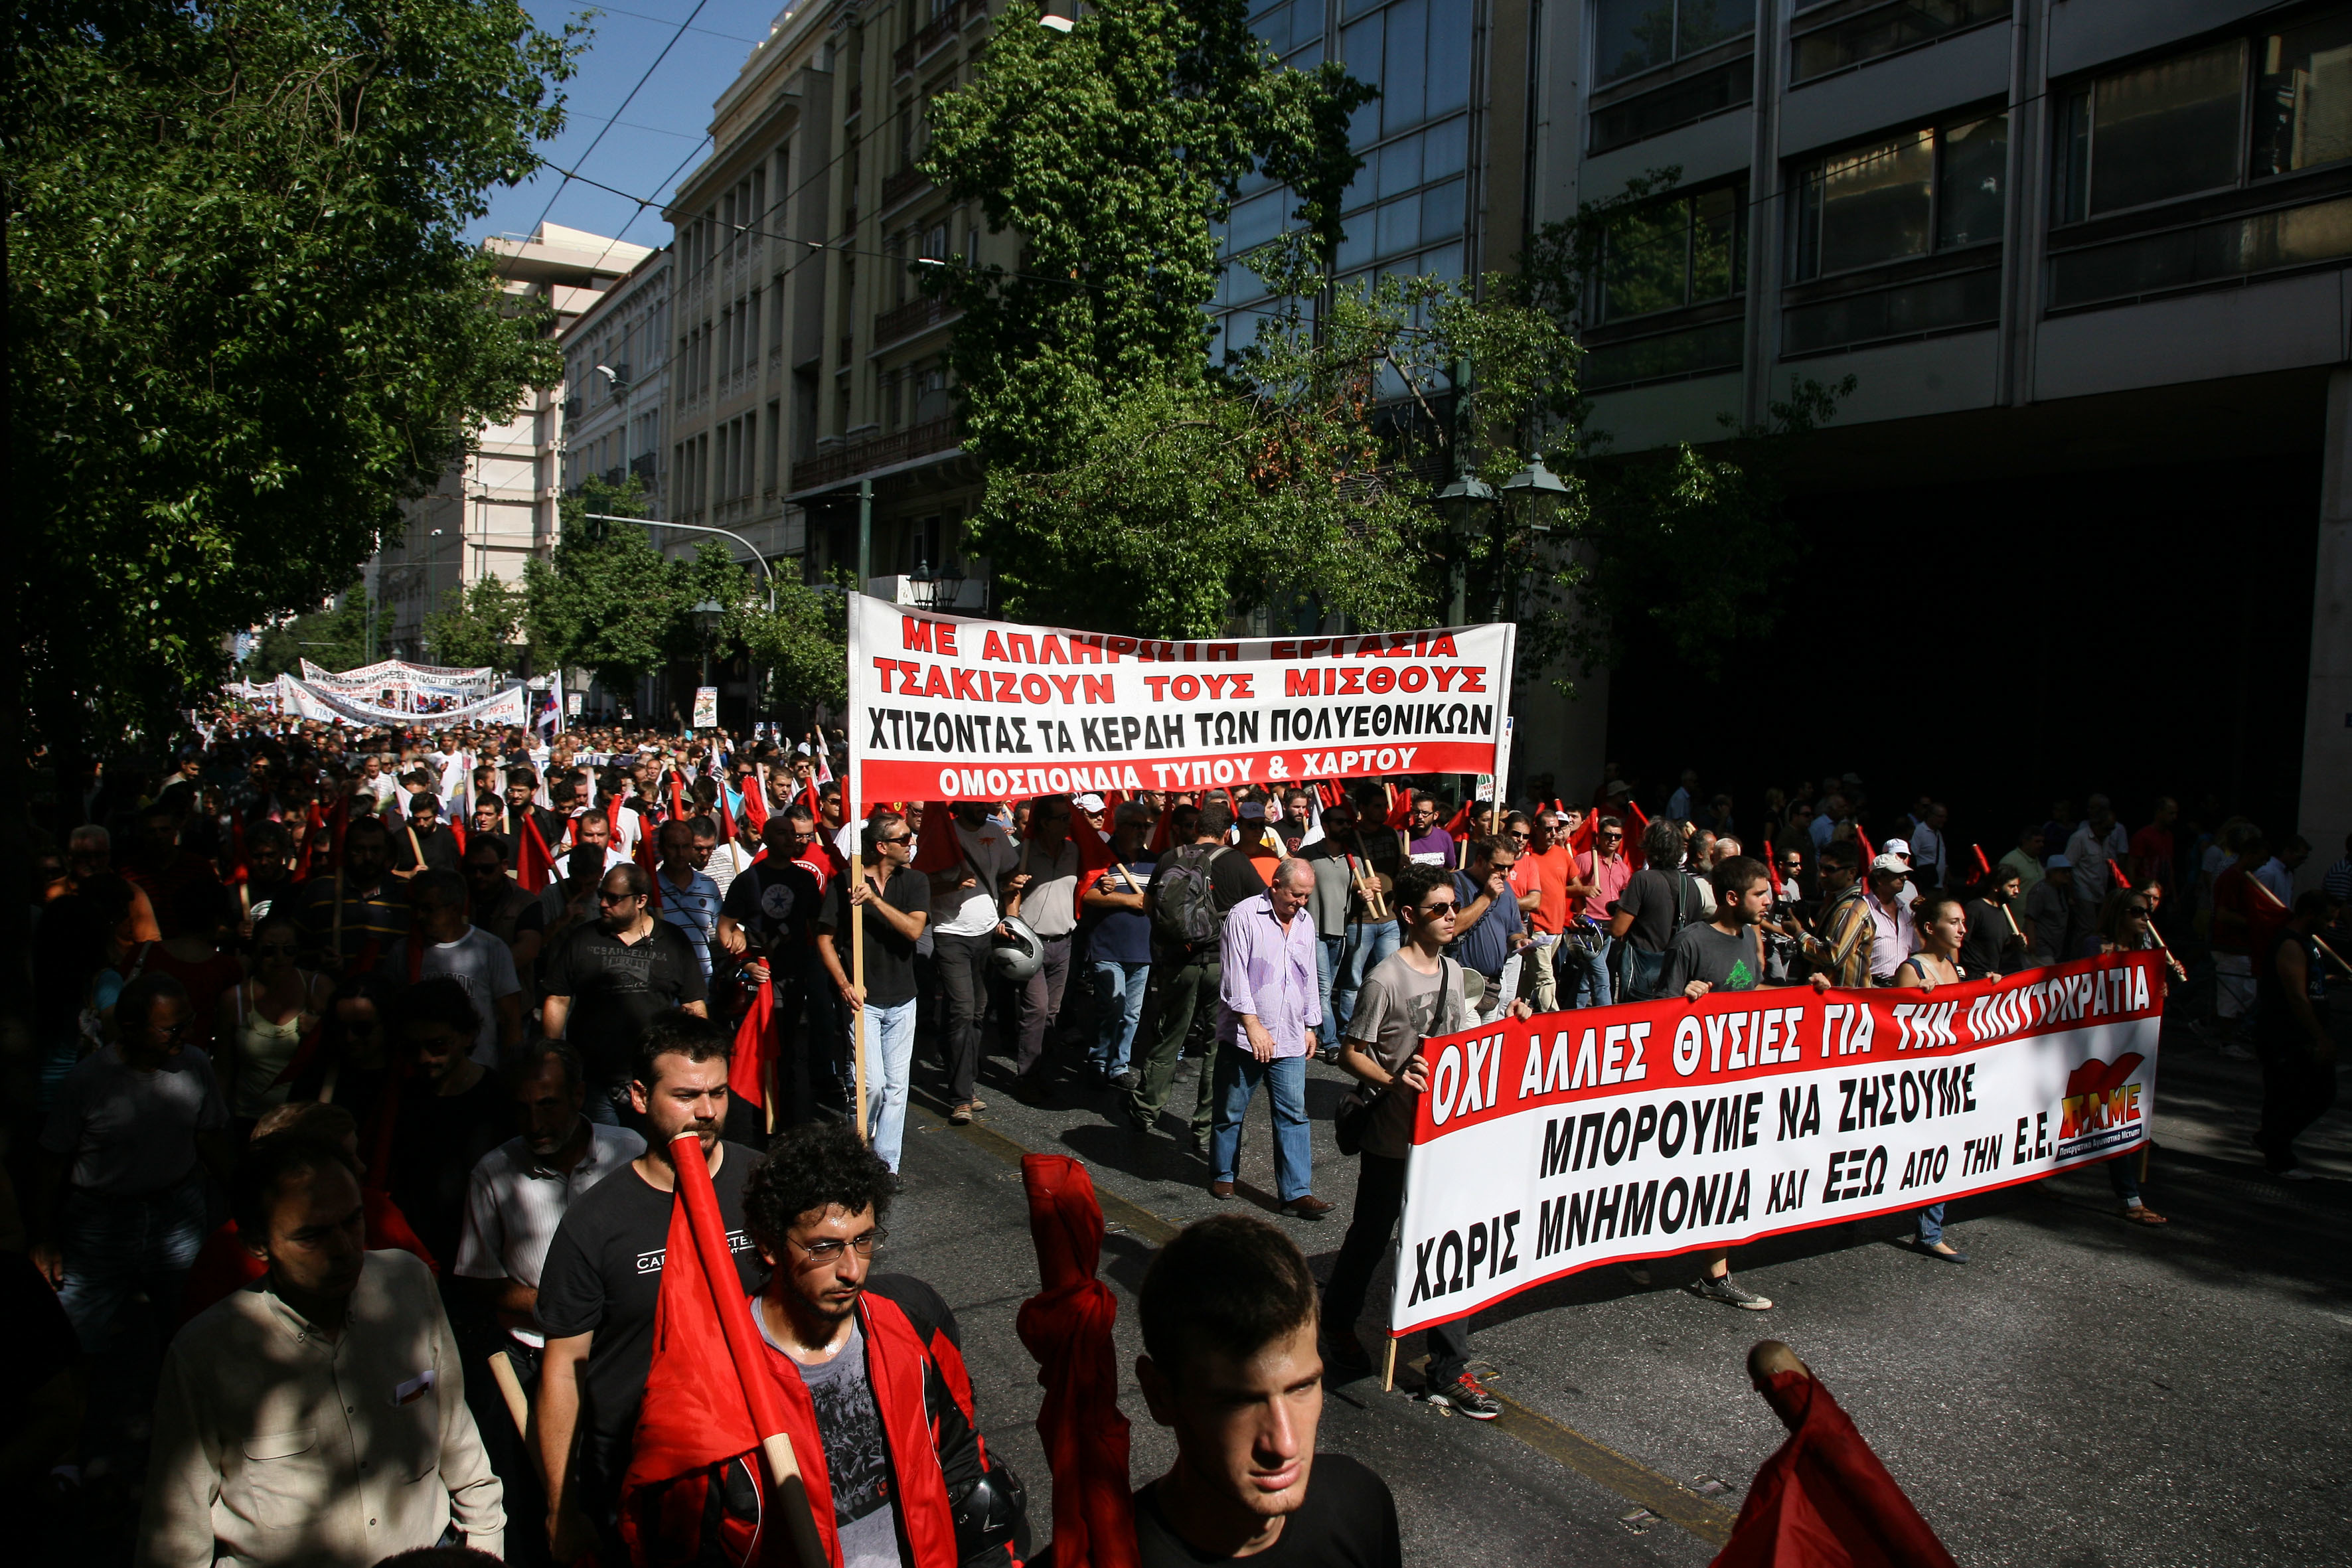 ΚΚΕ: διαδηλώσεις και συλλαλητήρια παντού